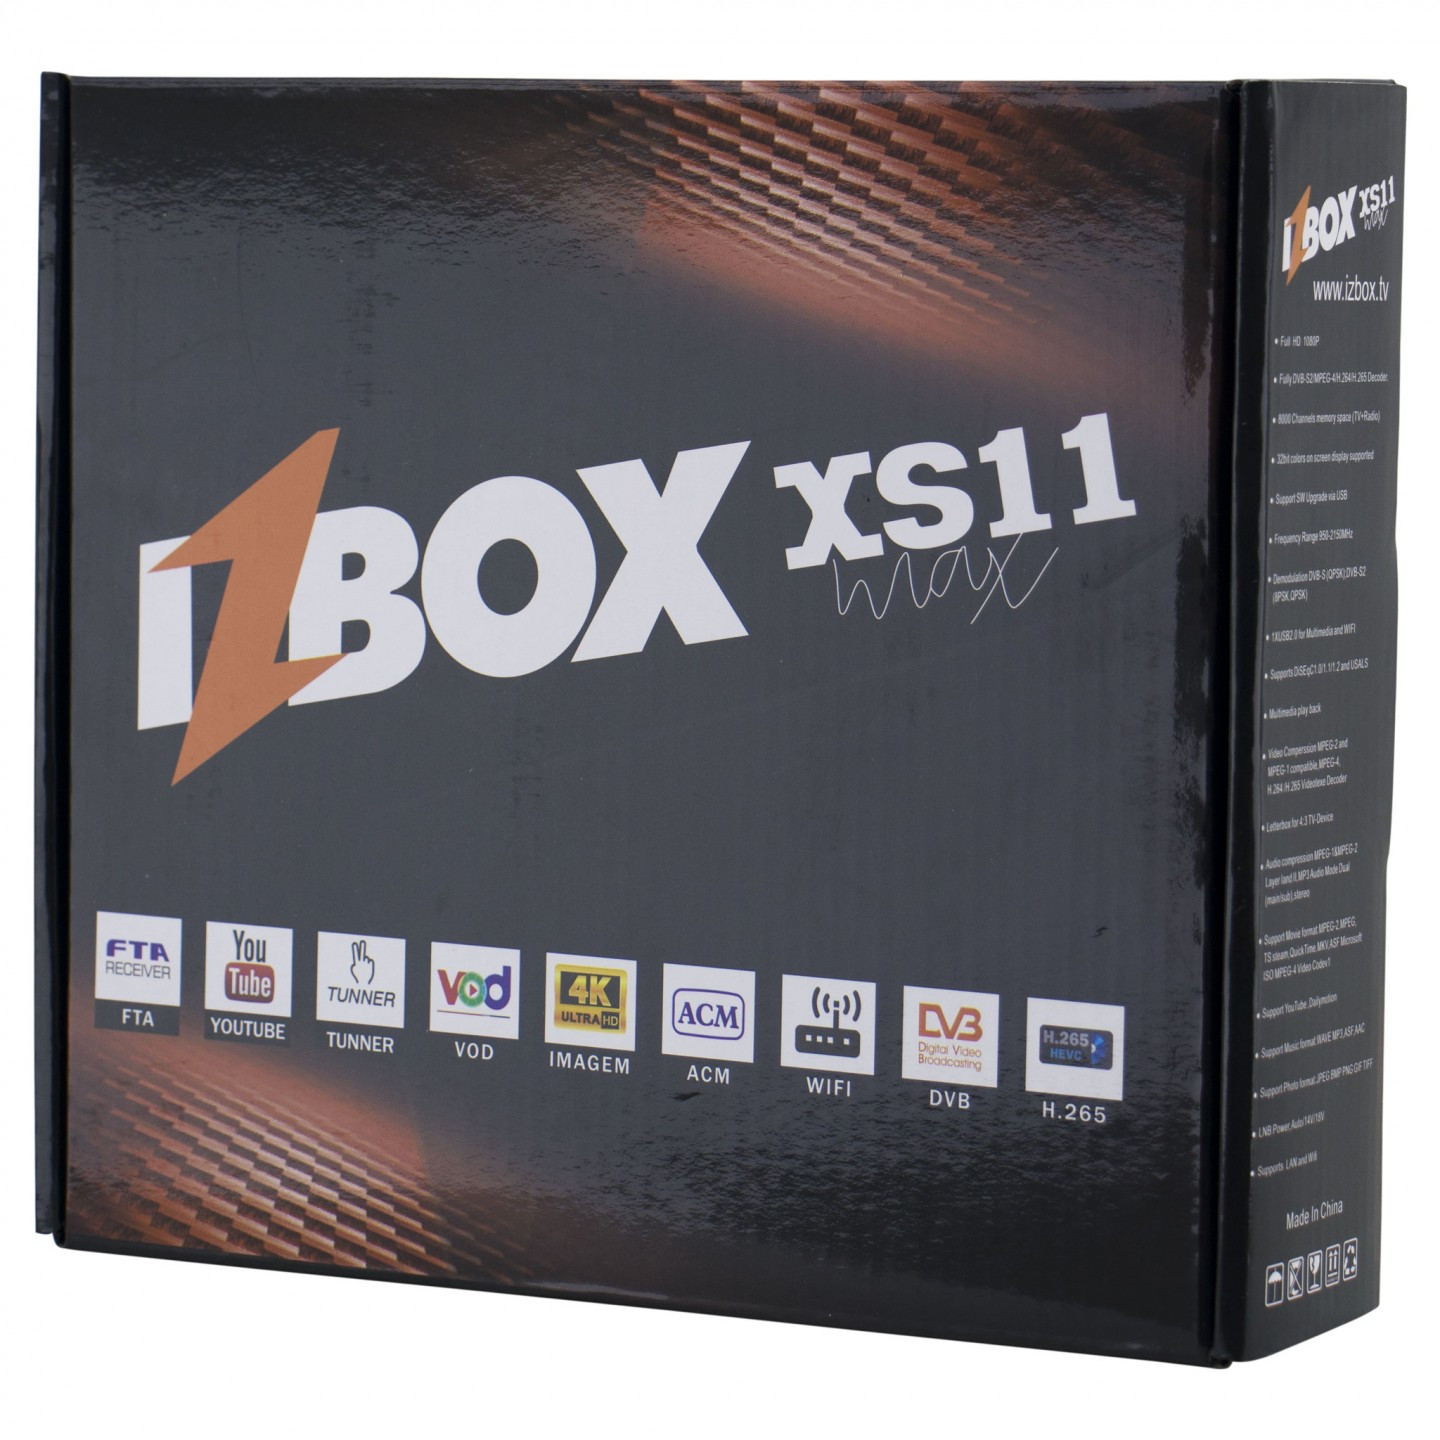 Receptor iZBox XS11